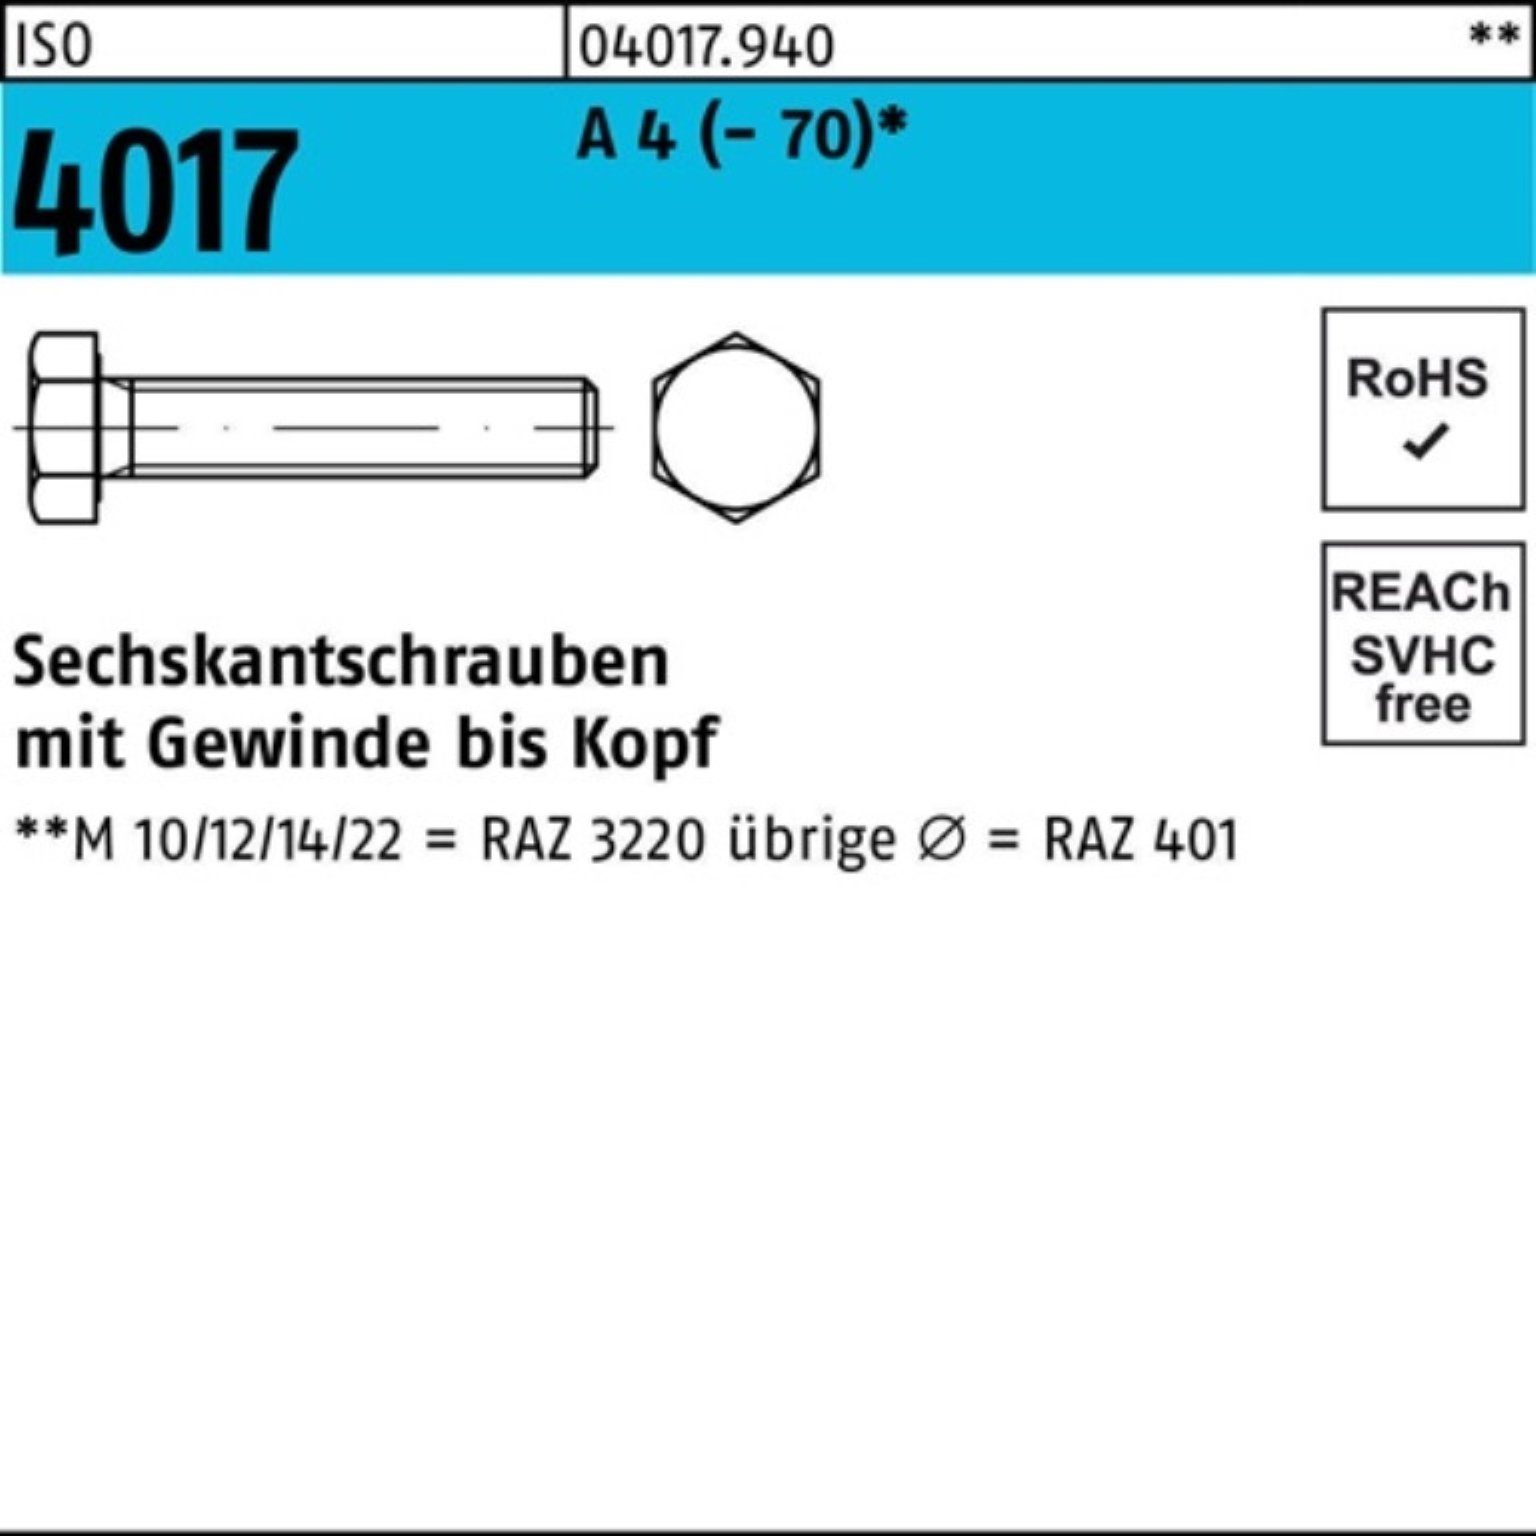 Sechskantschraube Bufab Sechskantschraube VG 100 A Stück 100er Pack 30 M3x ISO ISO 4 401 4017